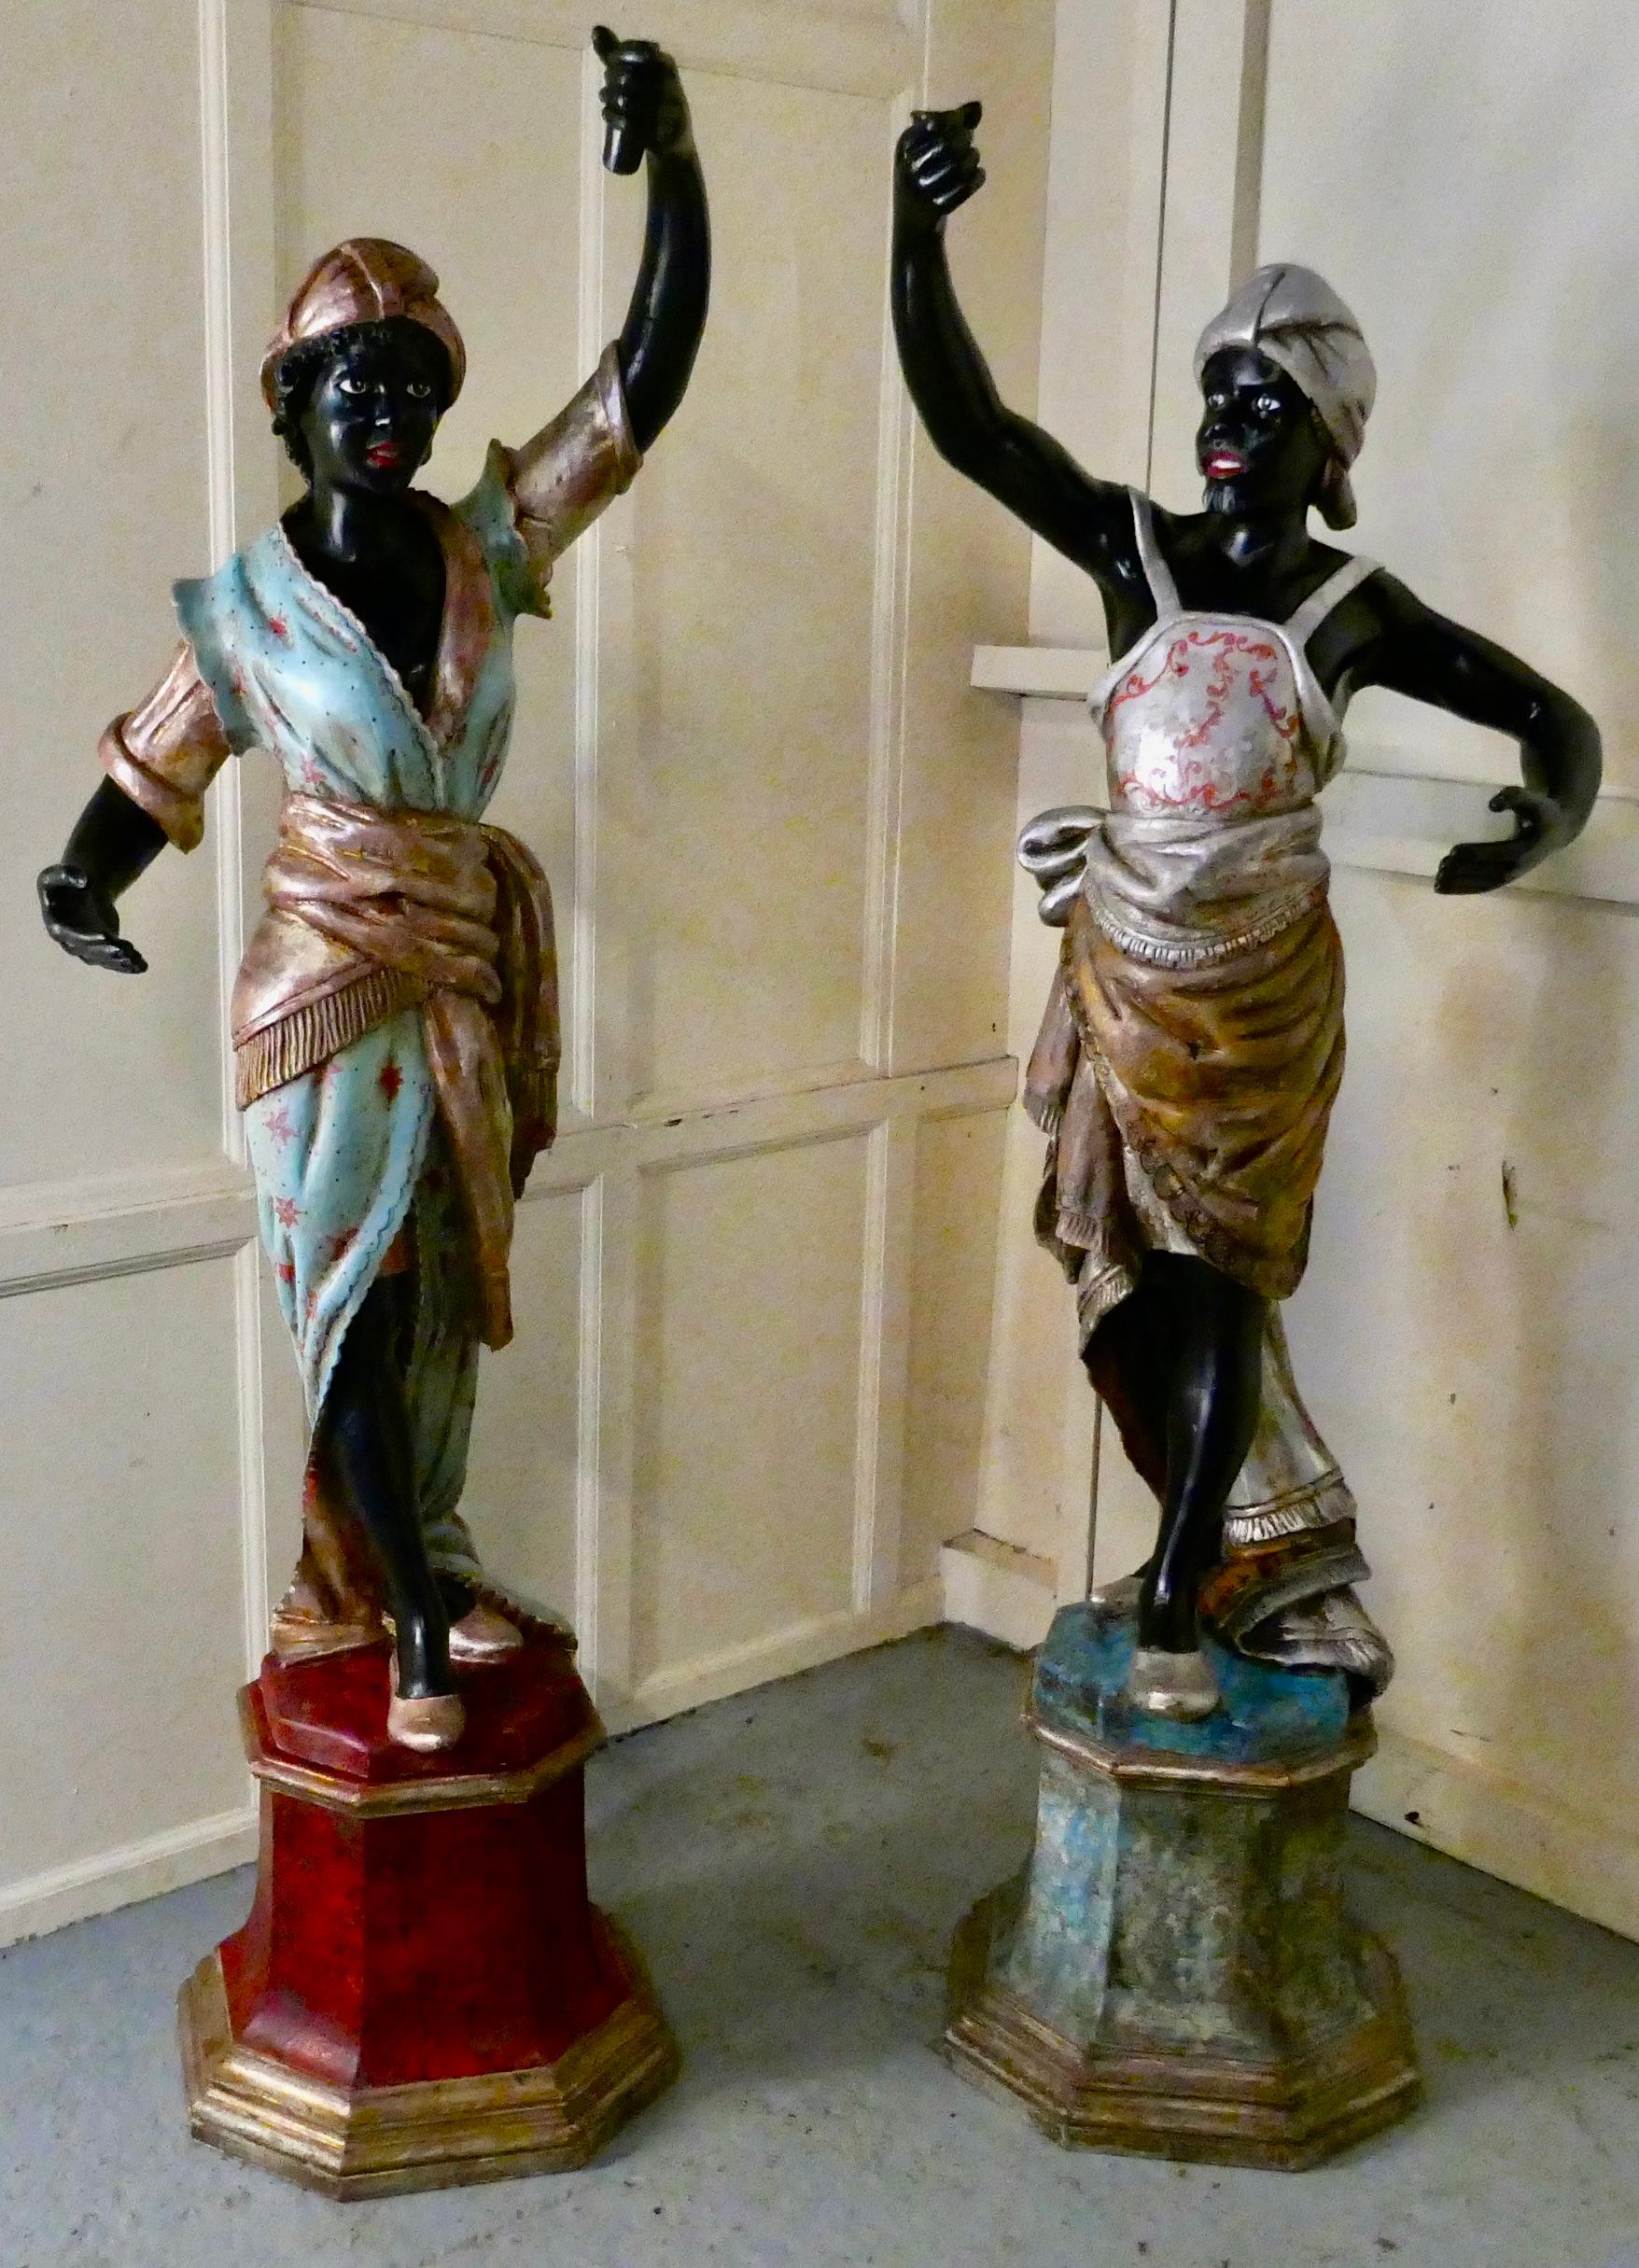 Paire de figures masculines et féminines italiennes sculptées du 19ème siècle

Cette charmante paire de figurines mesure près de 2,5 mètres de haut. Chacune d'entre elles tient dans sa main une douille qui servait autrefois à alimenter une